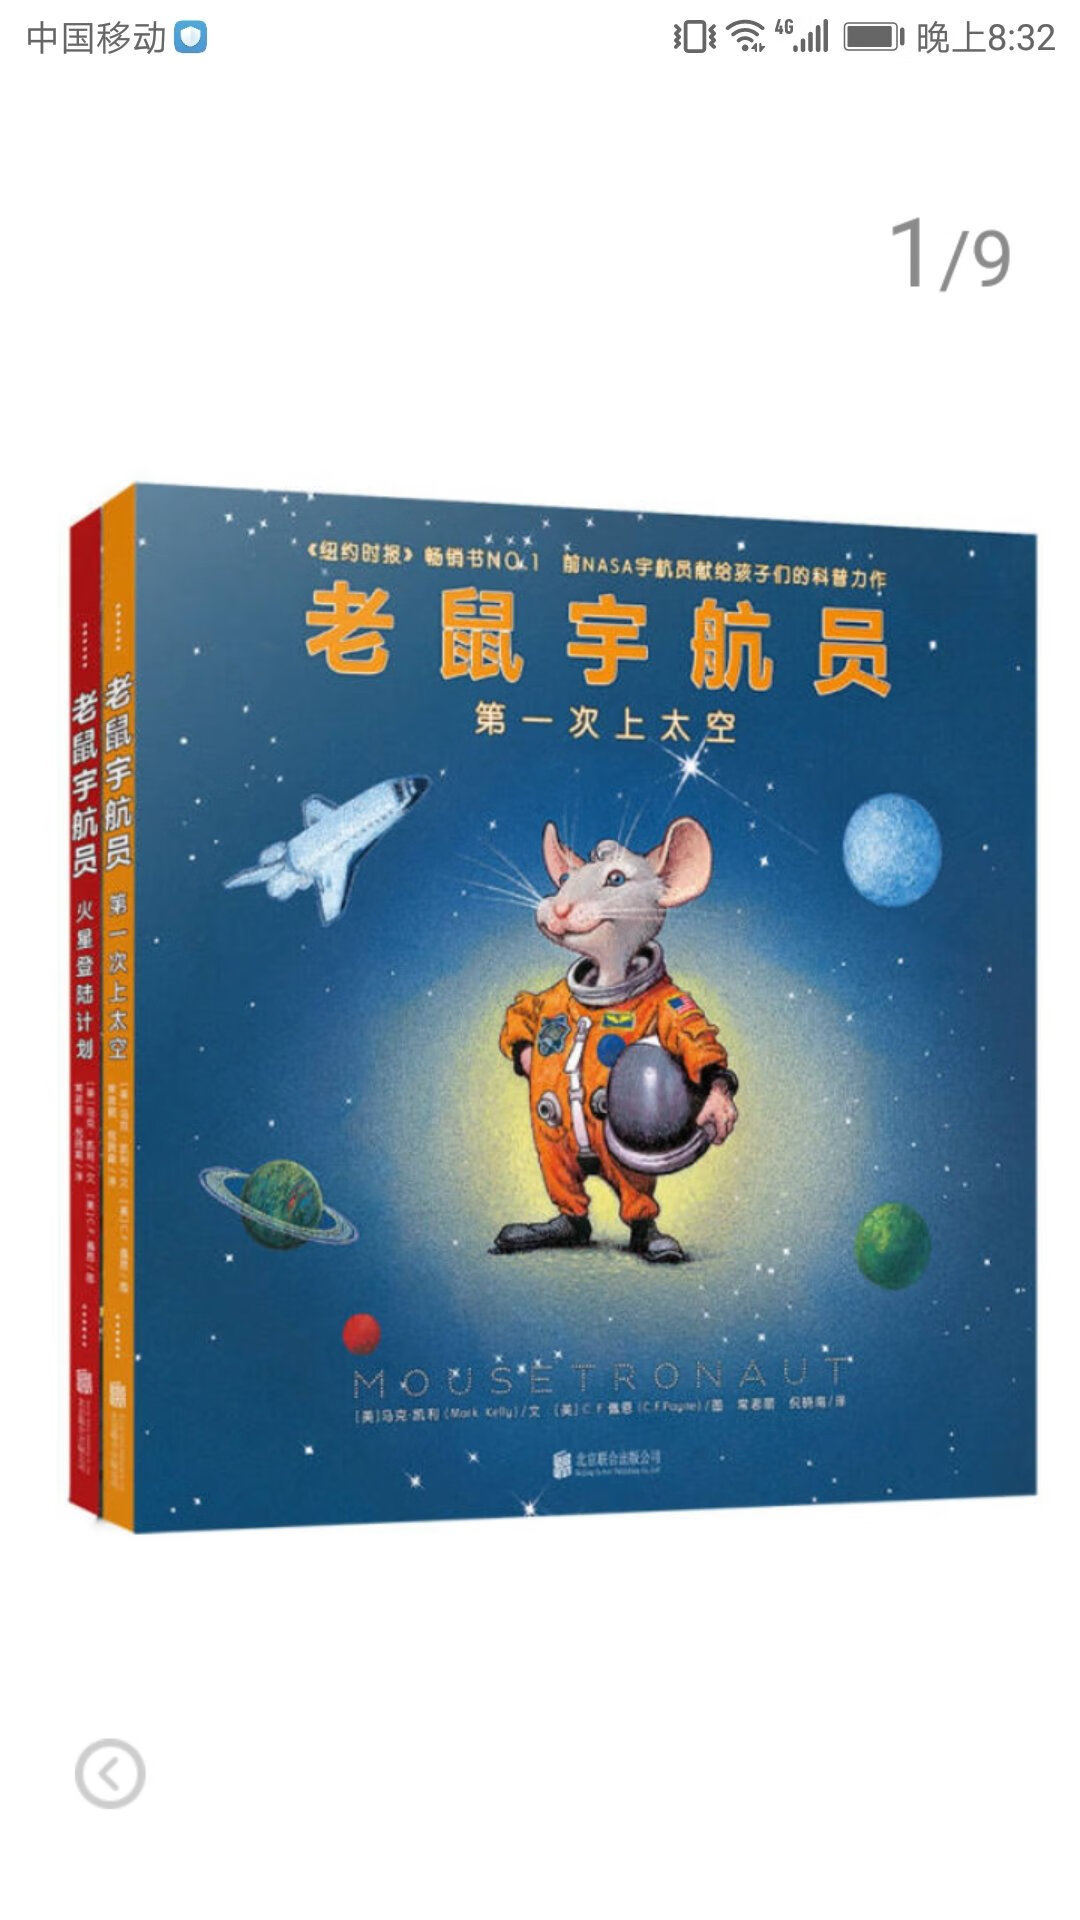 买对了，真的特别好，这那时老鼠就是一个小孩子呀，把航空这样的复杂的事情怎么样跟孩子解释说明白，这本书就是成功的典范。